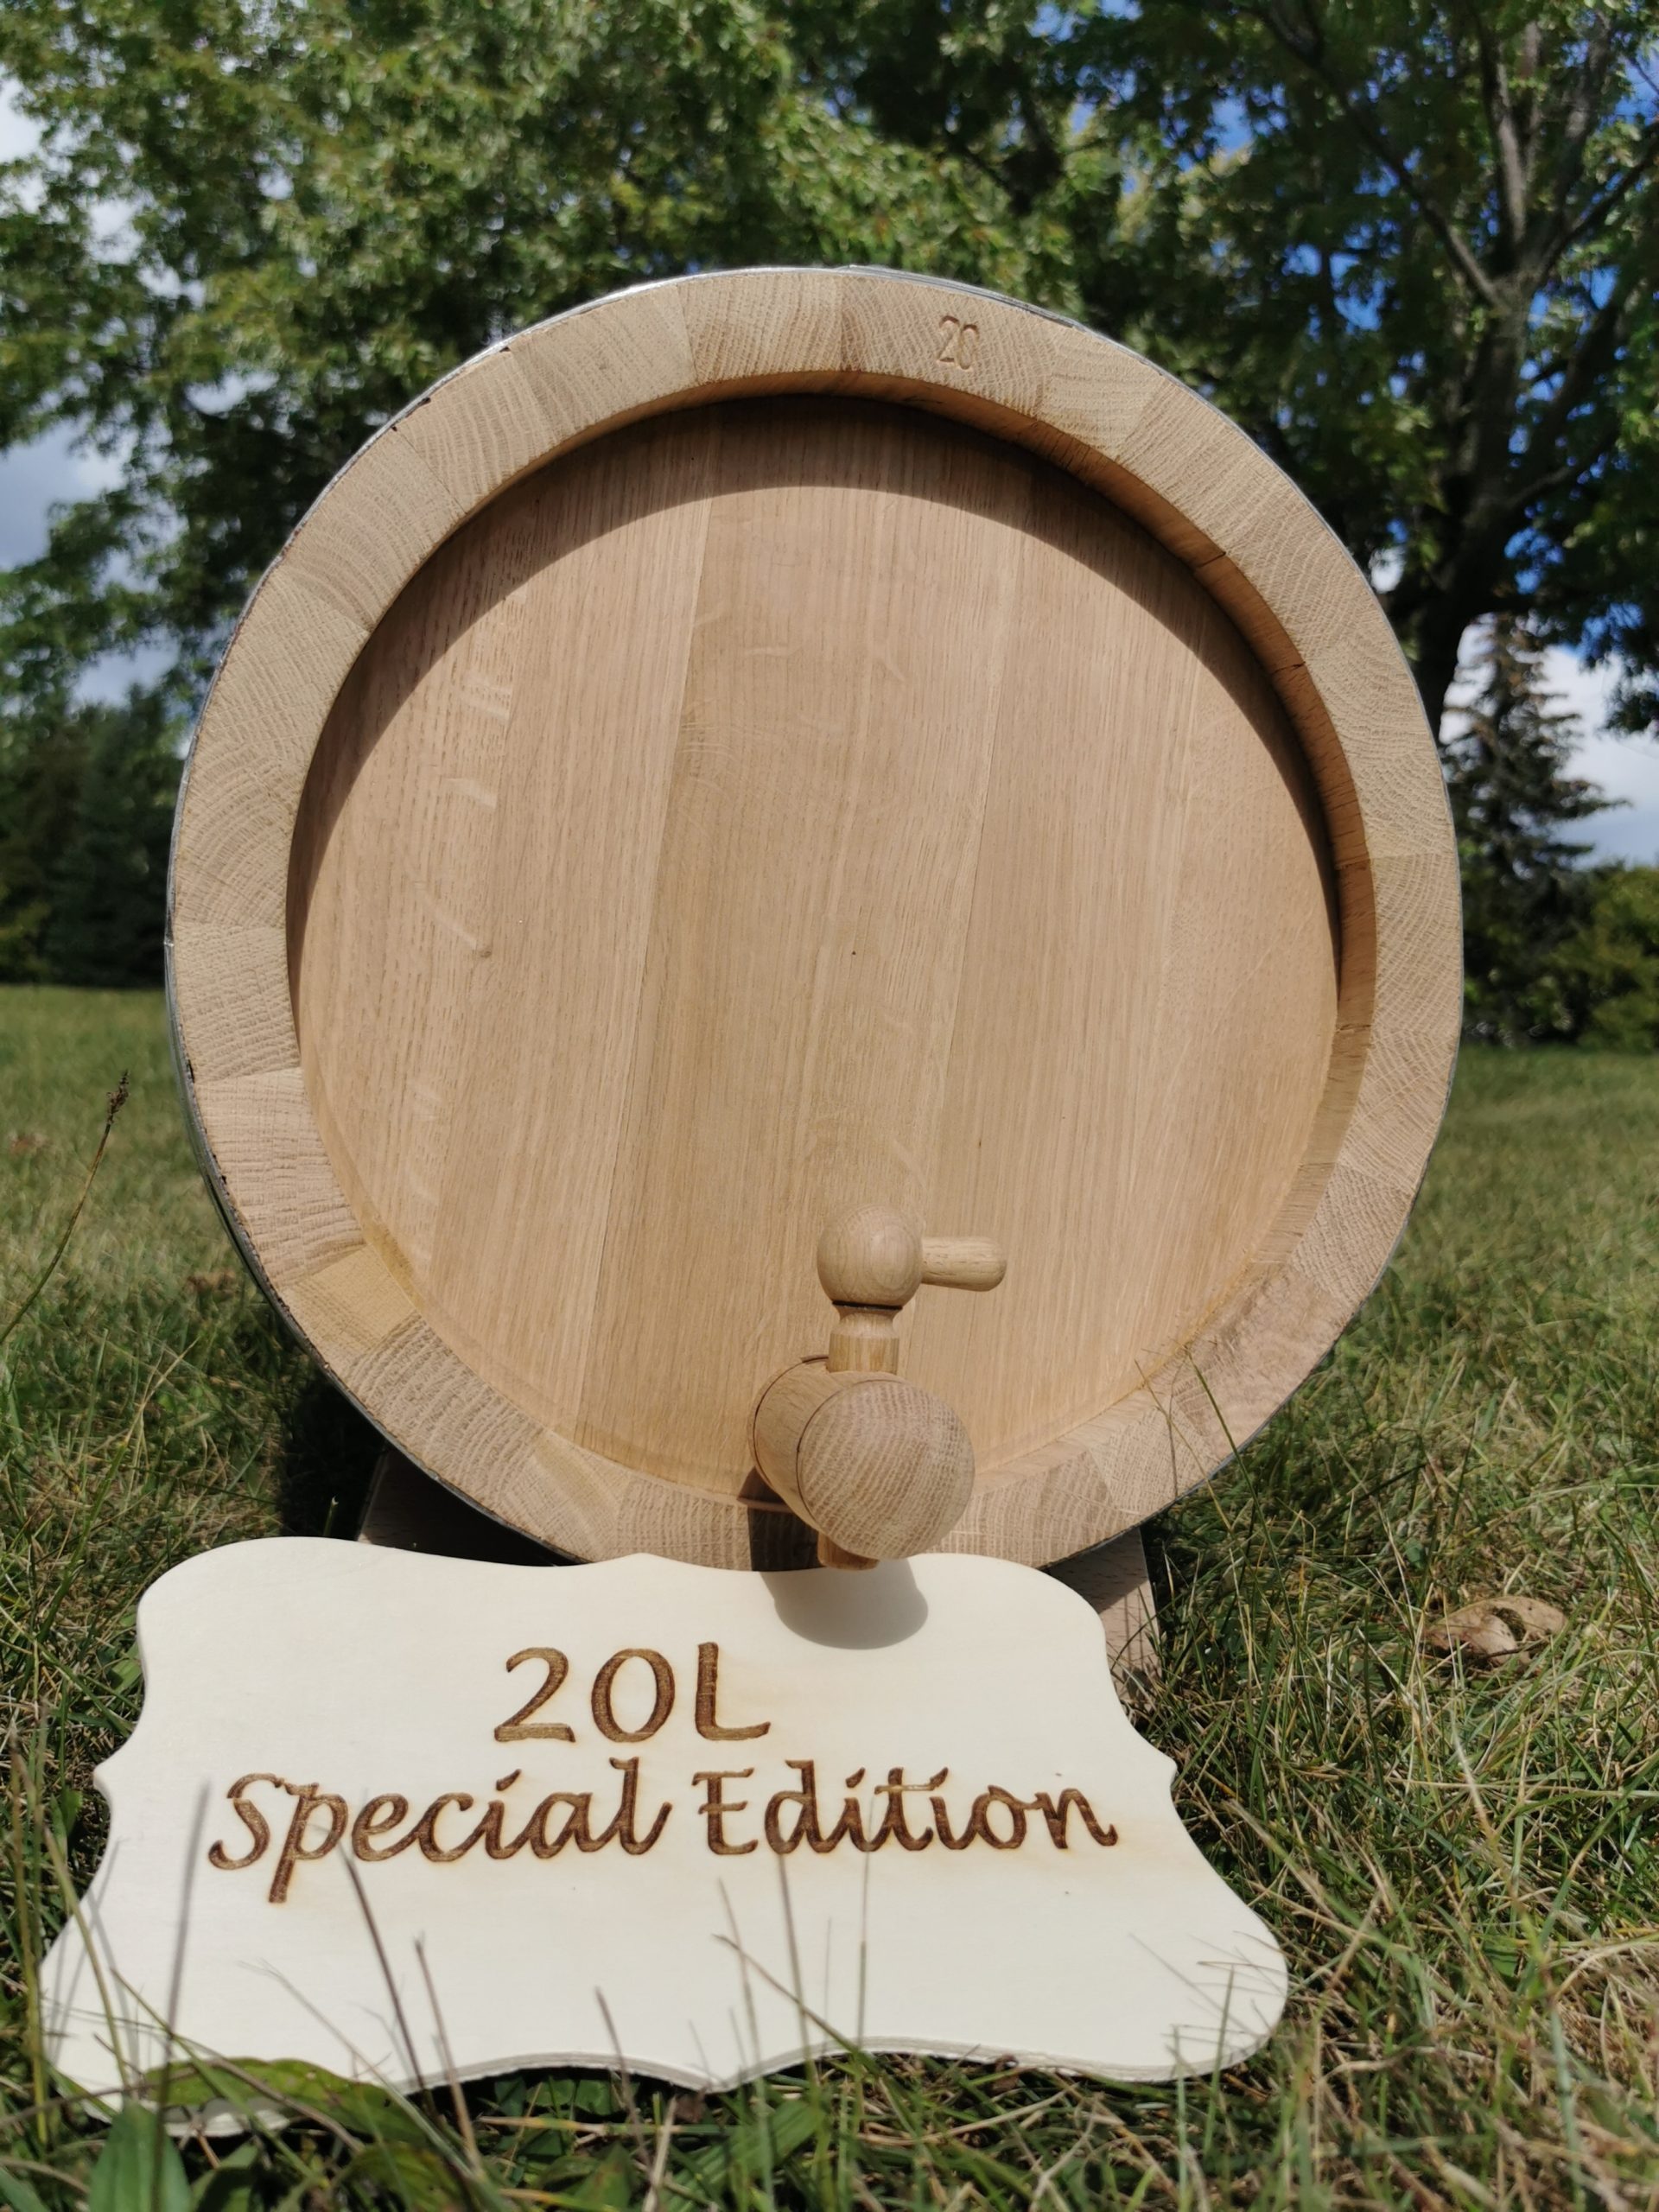 Фото 2 - Special Edition Oak barrel 20L.